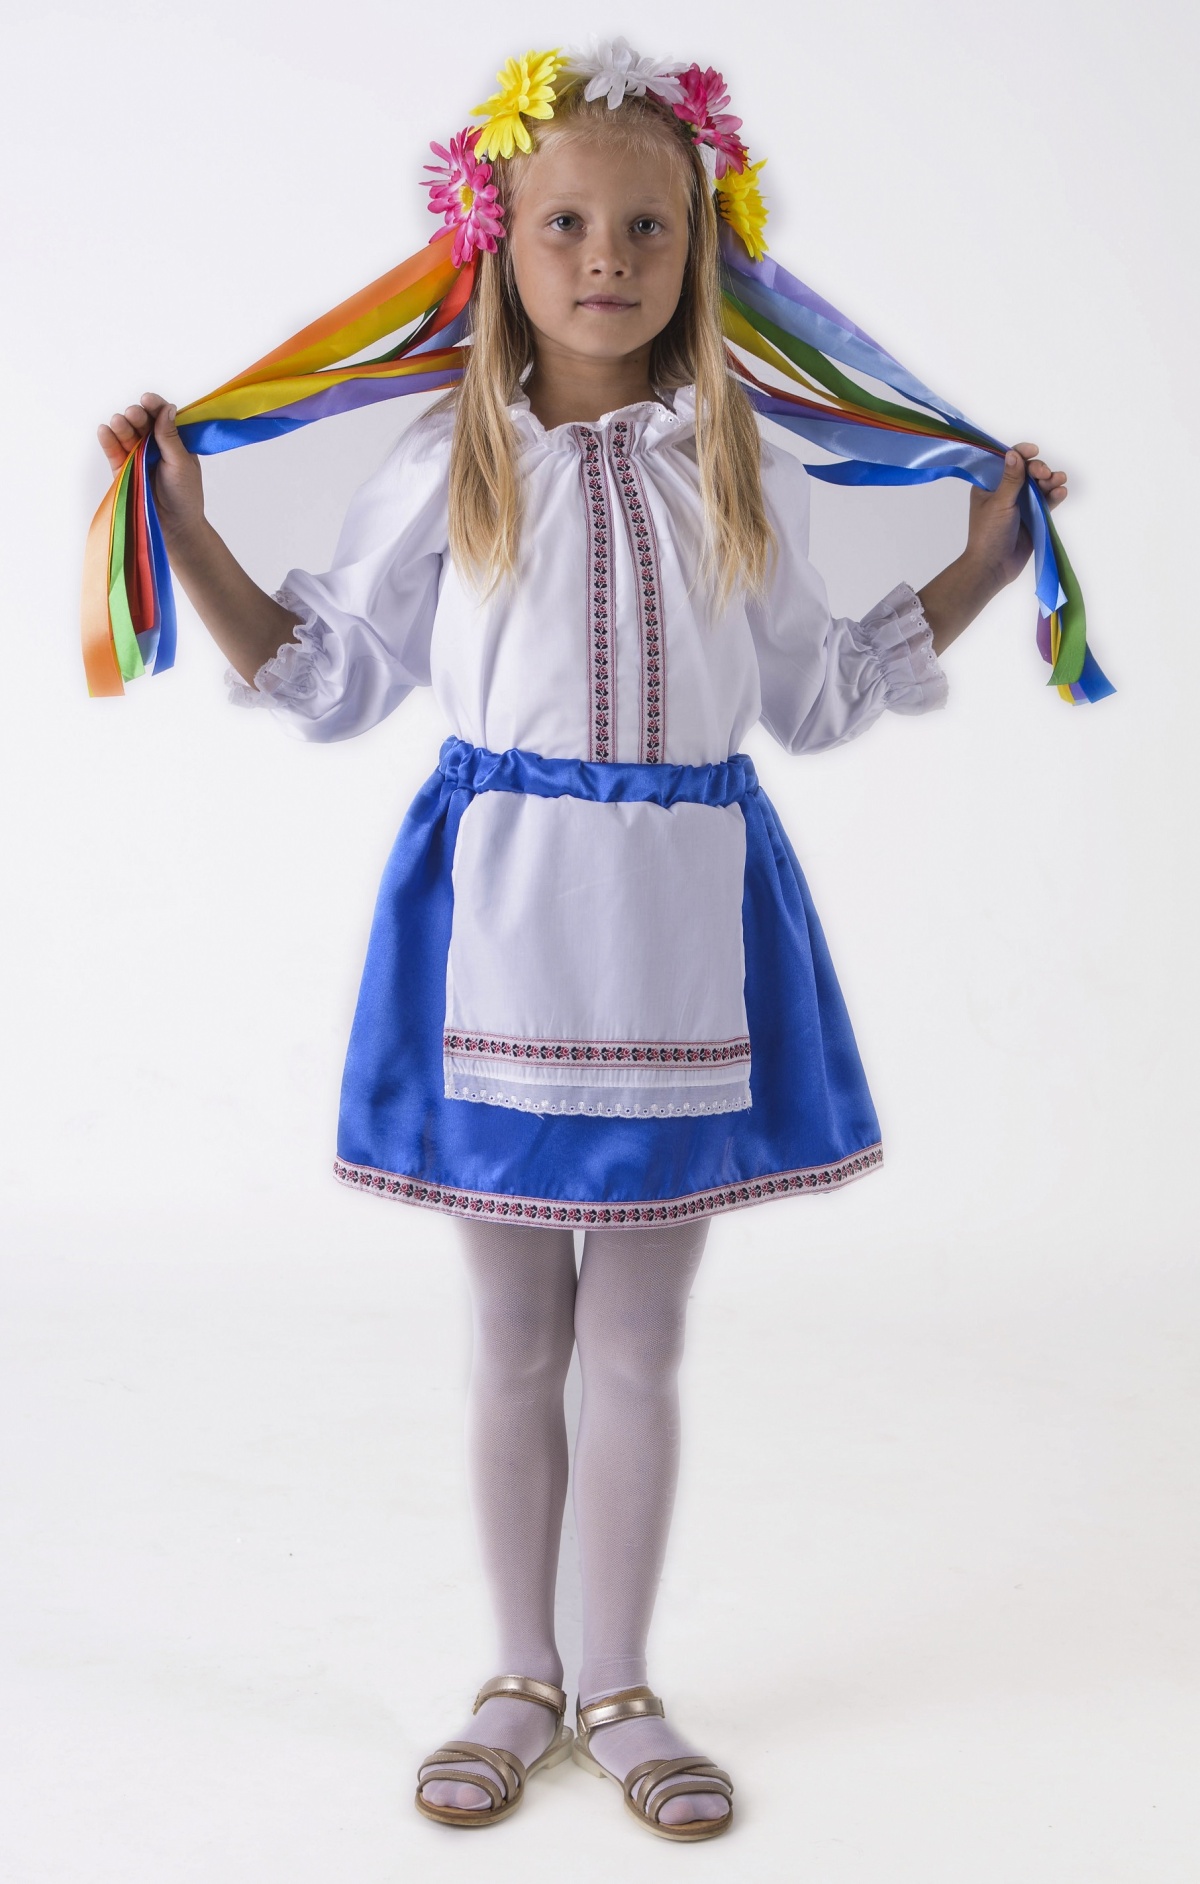 Украинский костюм (девочка): блузка, юбка с передником, венок с лентами)